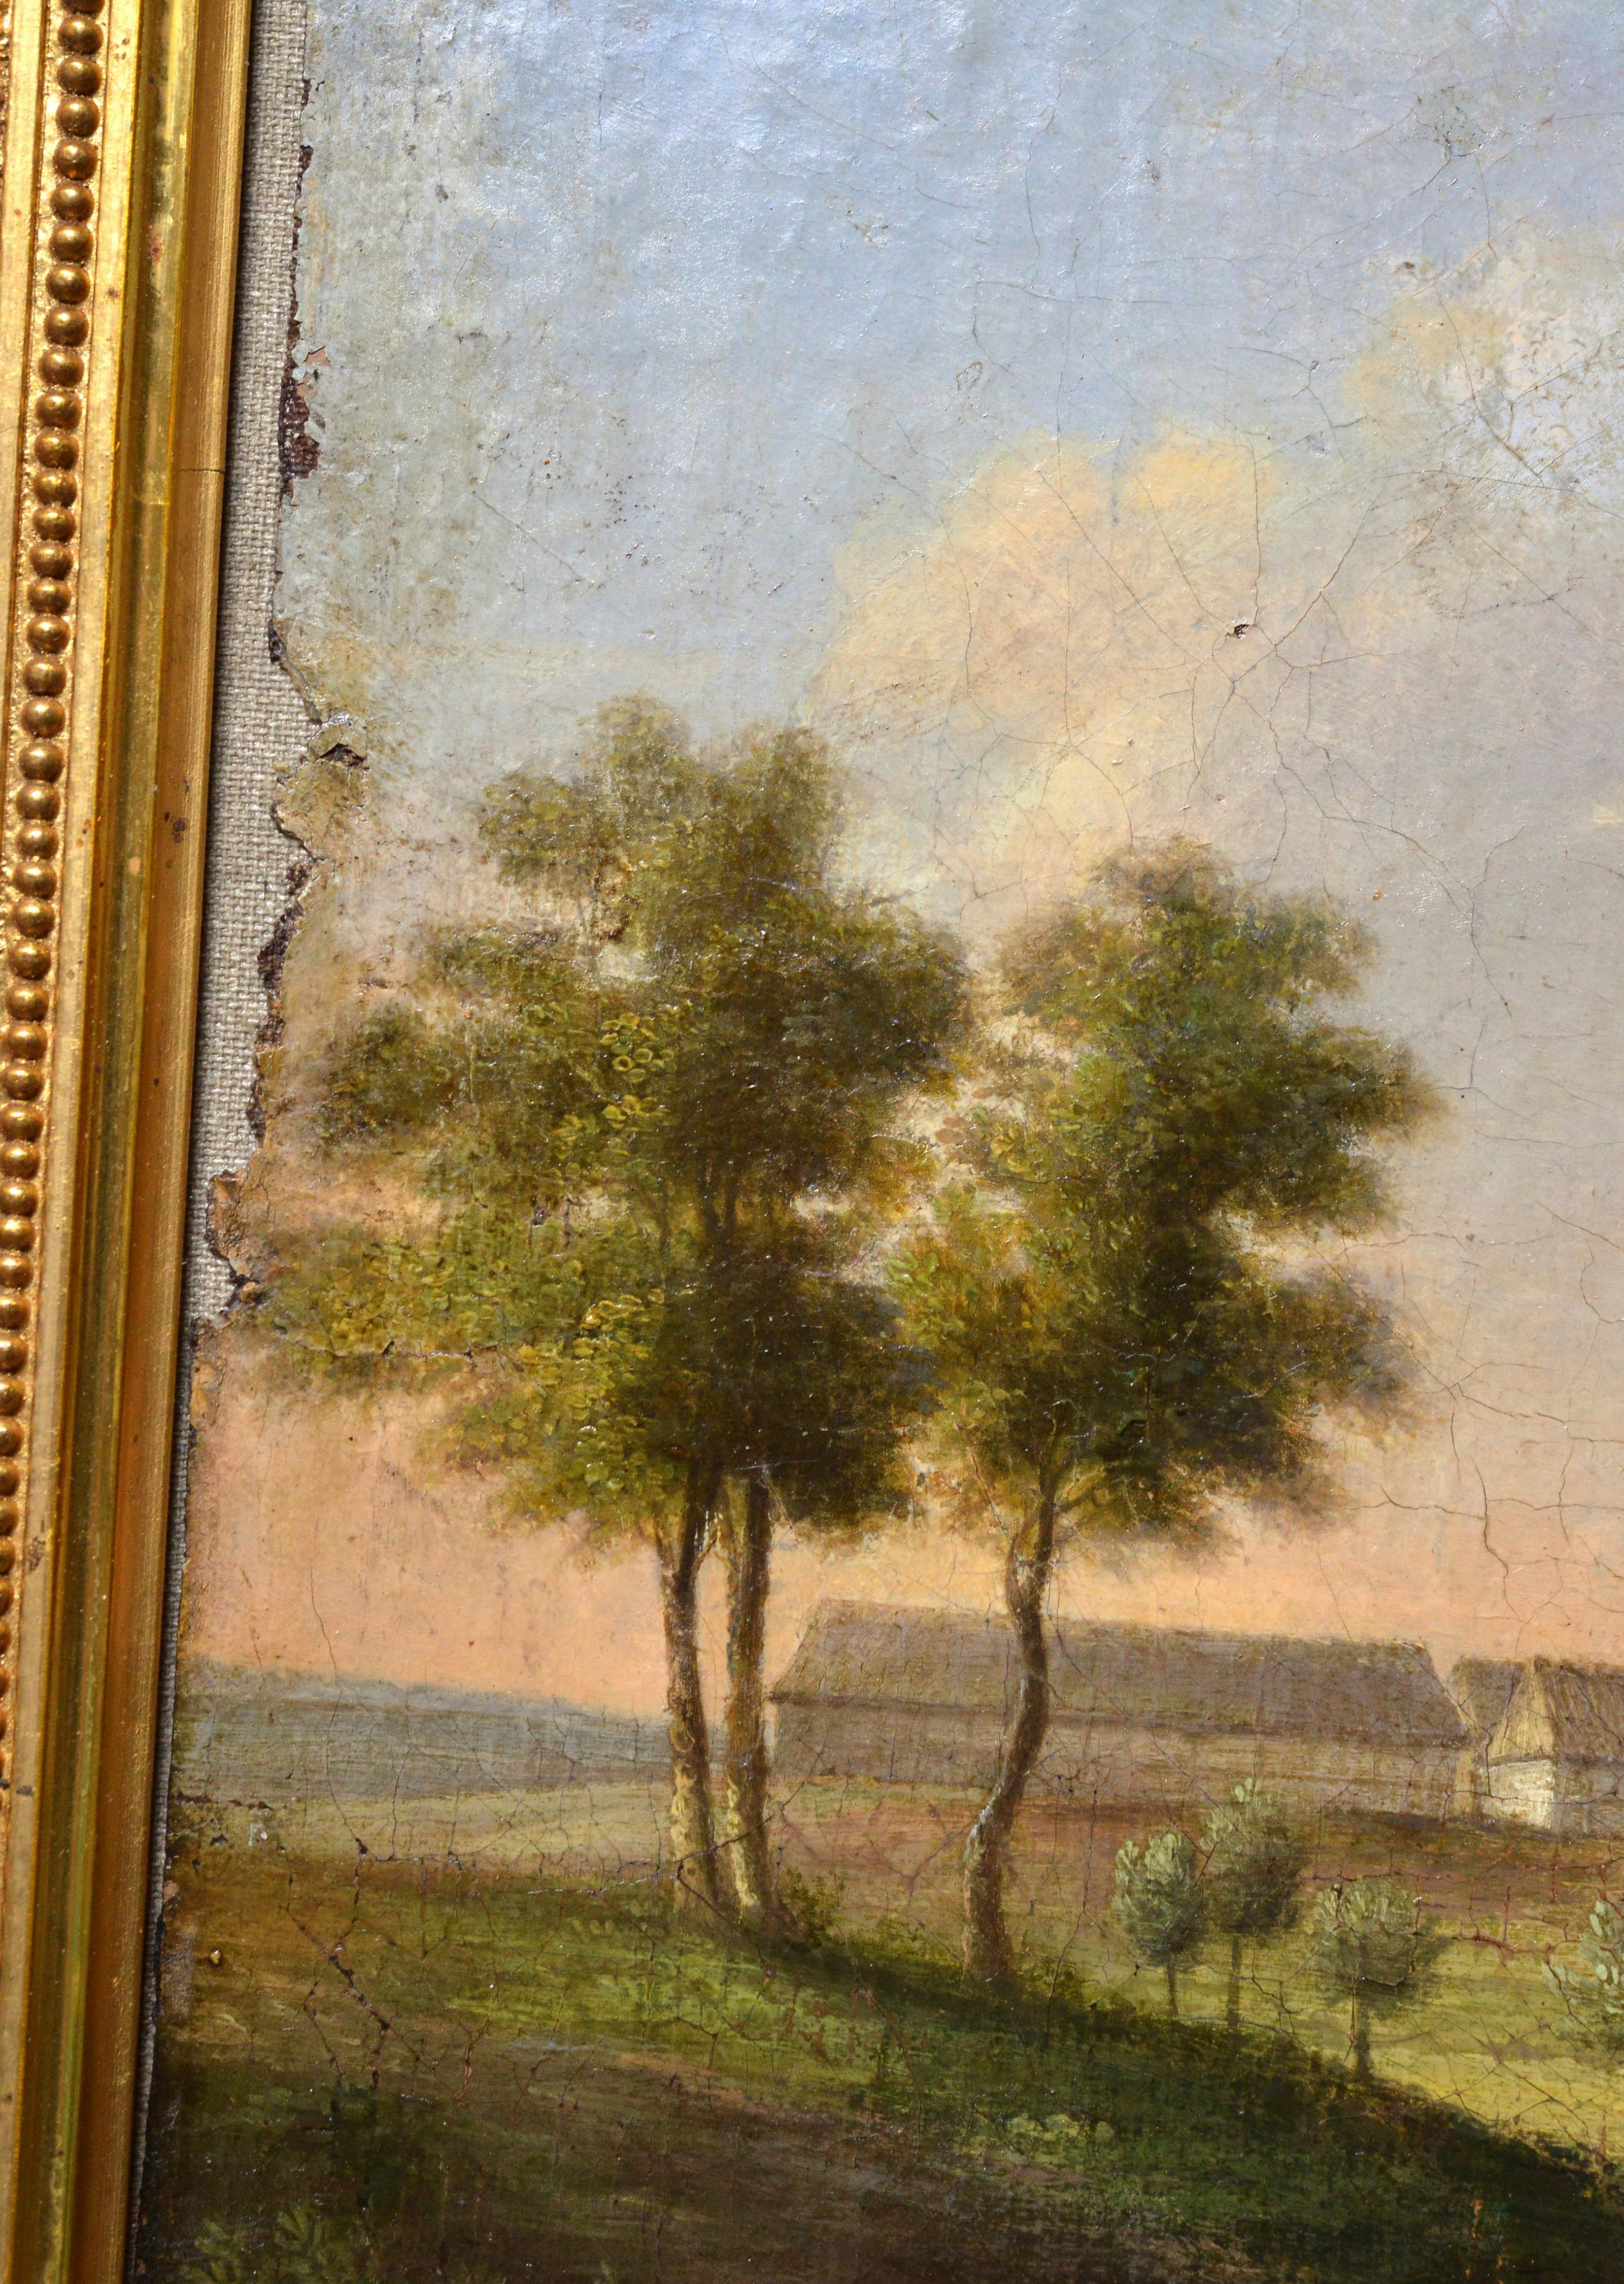 Signiert unten rechts für Johann Christian Vollerdt (1708 - 1769). Die Schönheit der barocken Landschaft ist in der Malerei sichtbar, eine ausgezeichnete Perspektive mit beeindruckenden Effekten von Hell-Dunkel. Dies zeichnet das Werk der deutschen